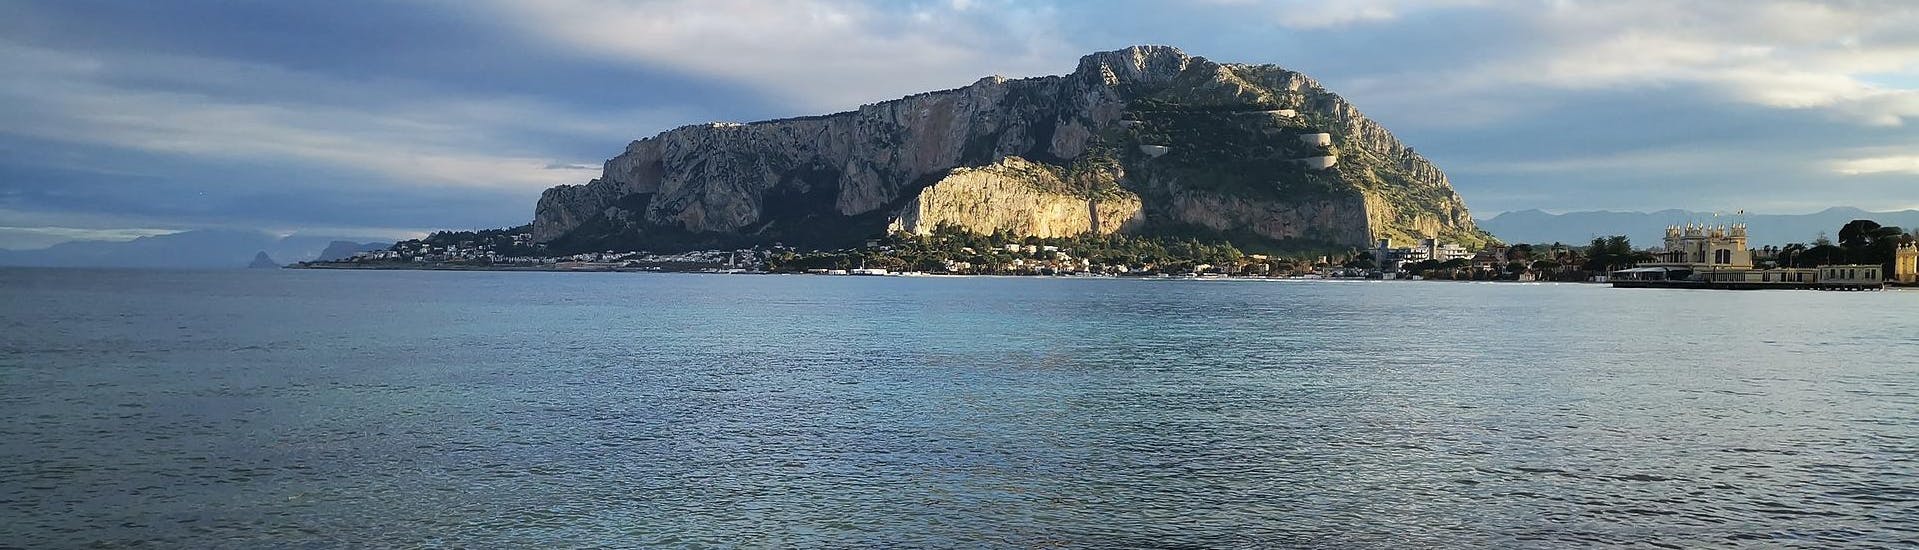 La spiaggia di Mondello e una montagna sullo sfondo a Palermo.